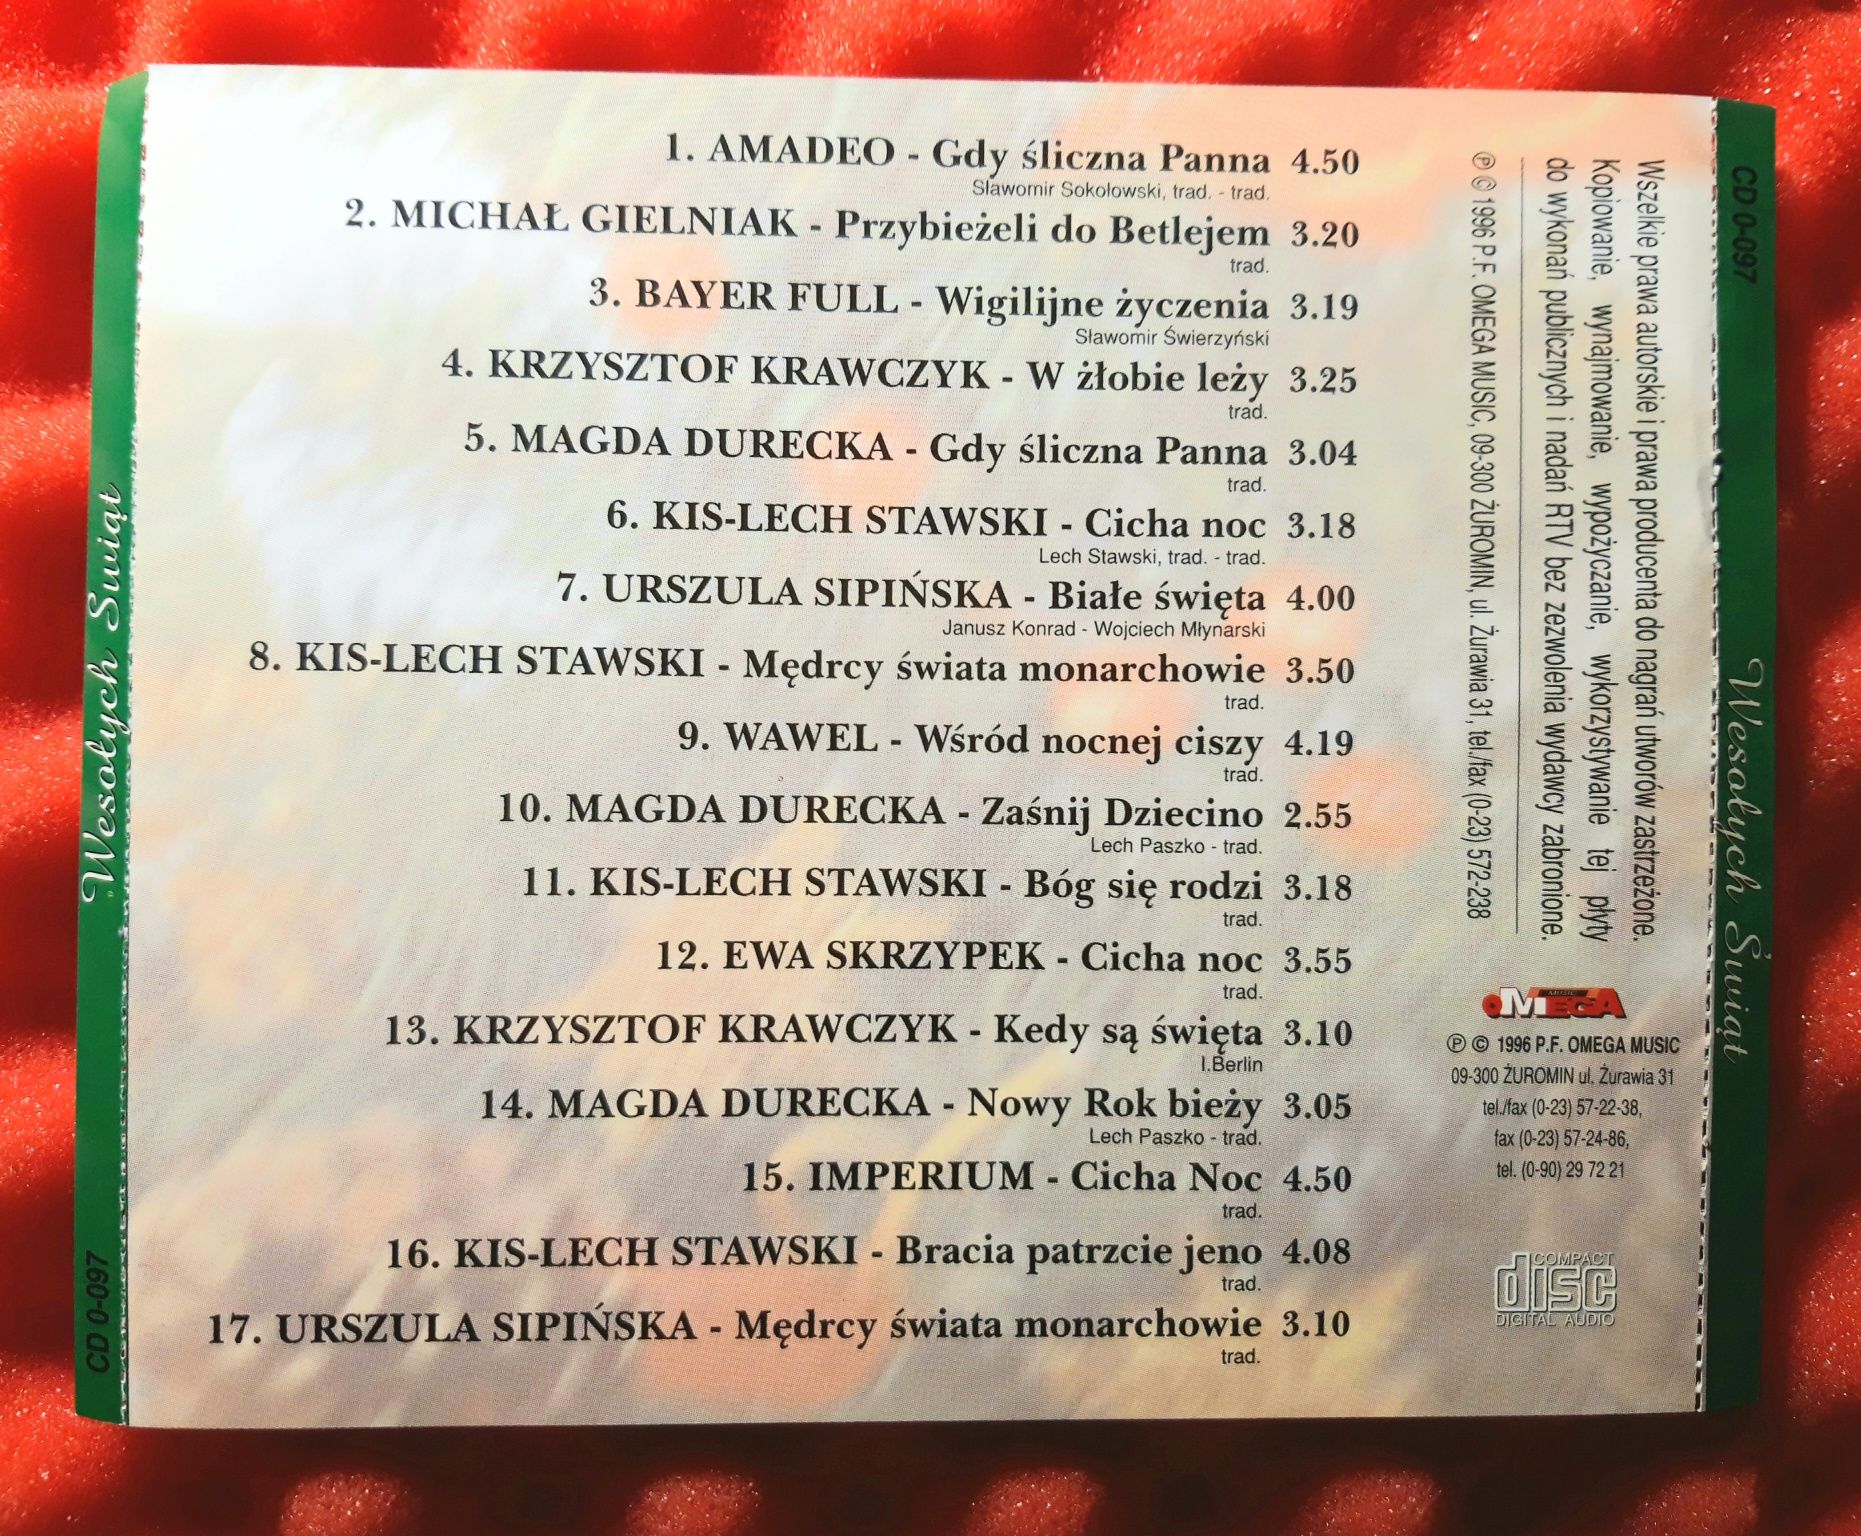 Wesołych Świąt (CD, 1996)